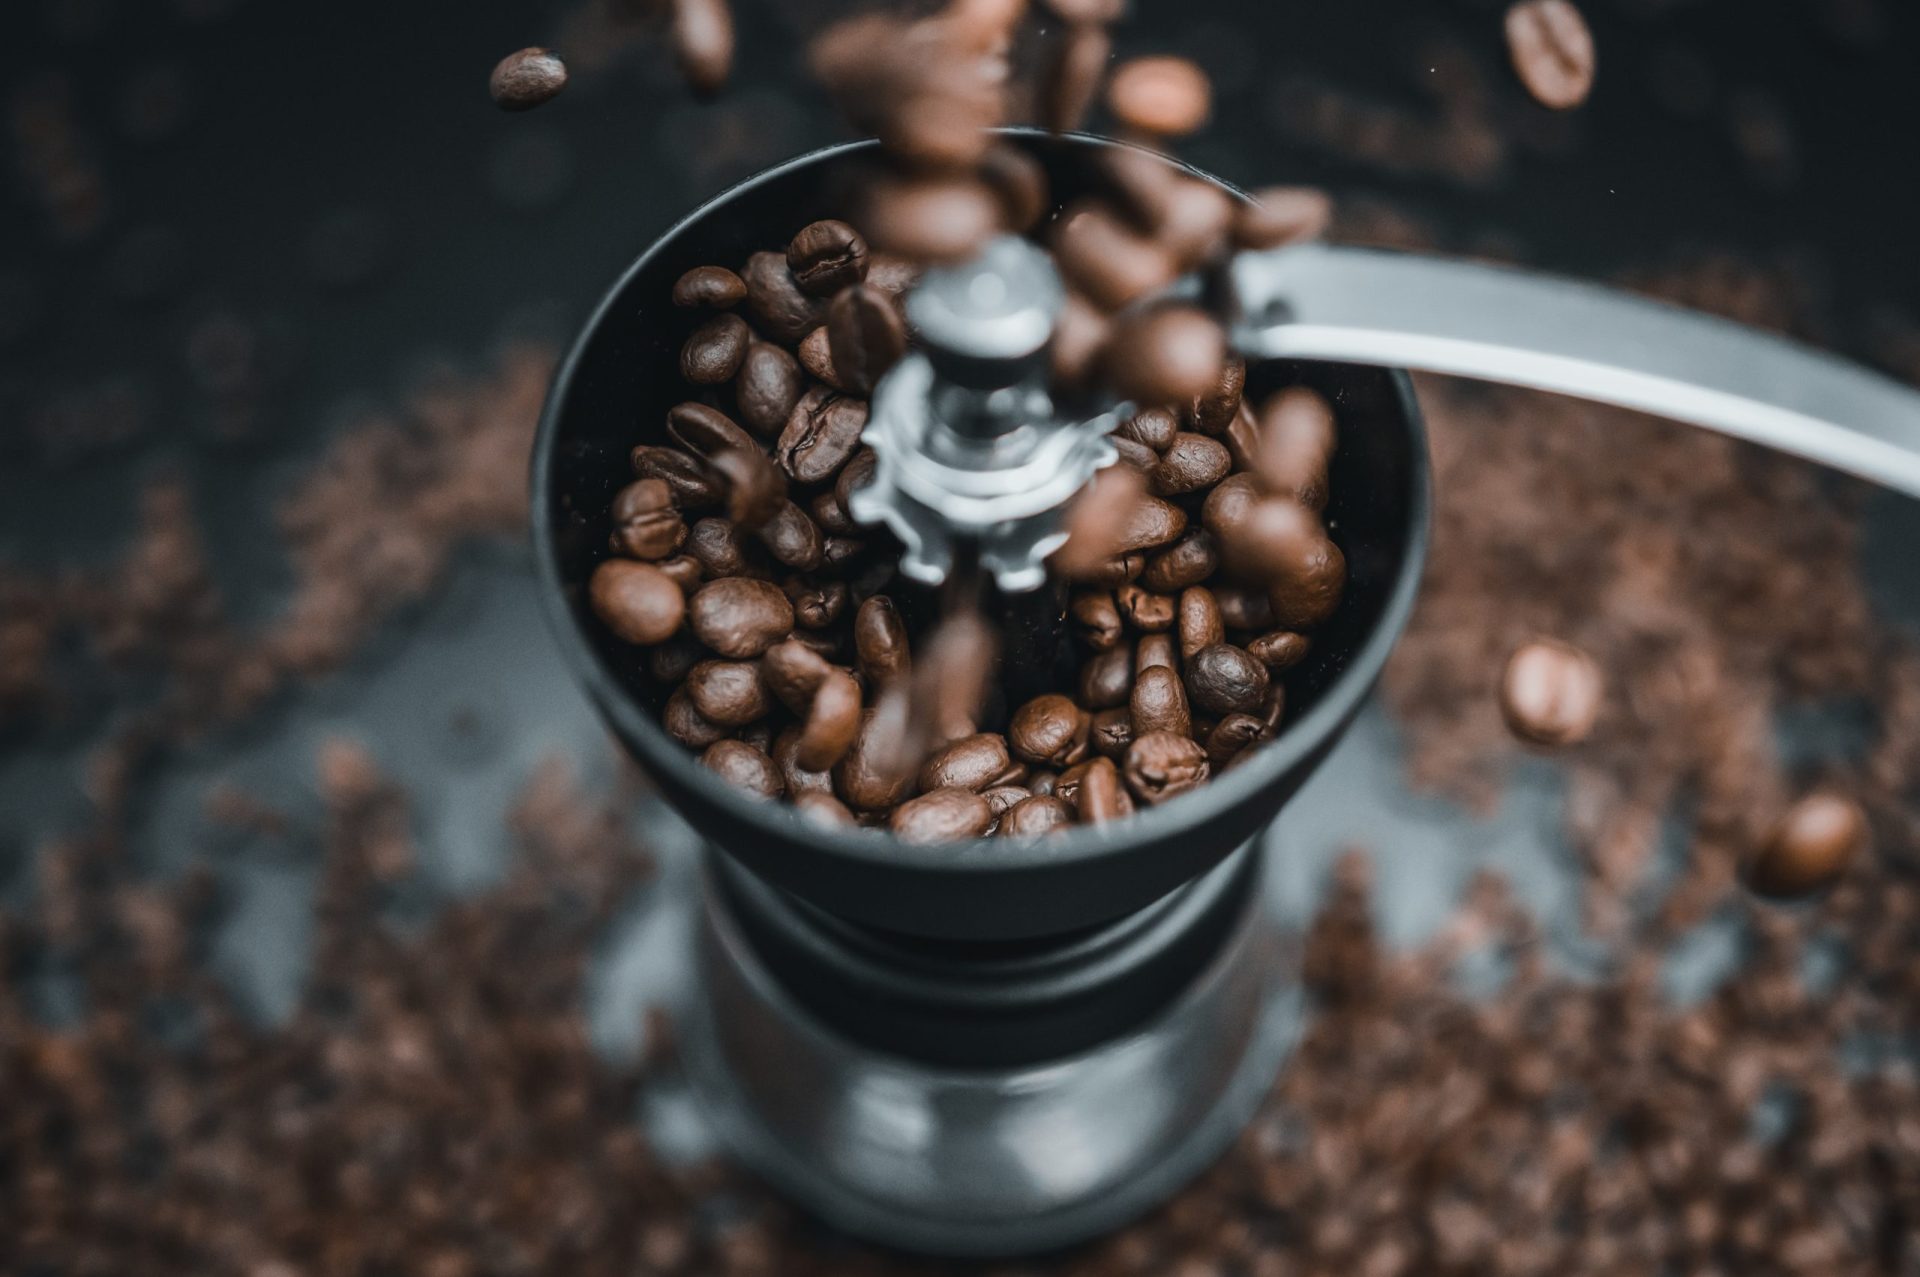 Des scientifiques résolvent un gros problème de mouture du café grâce à la volcanologie